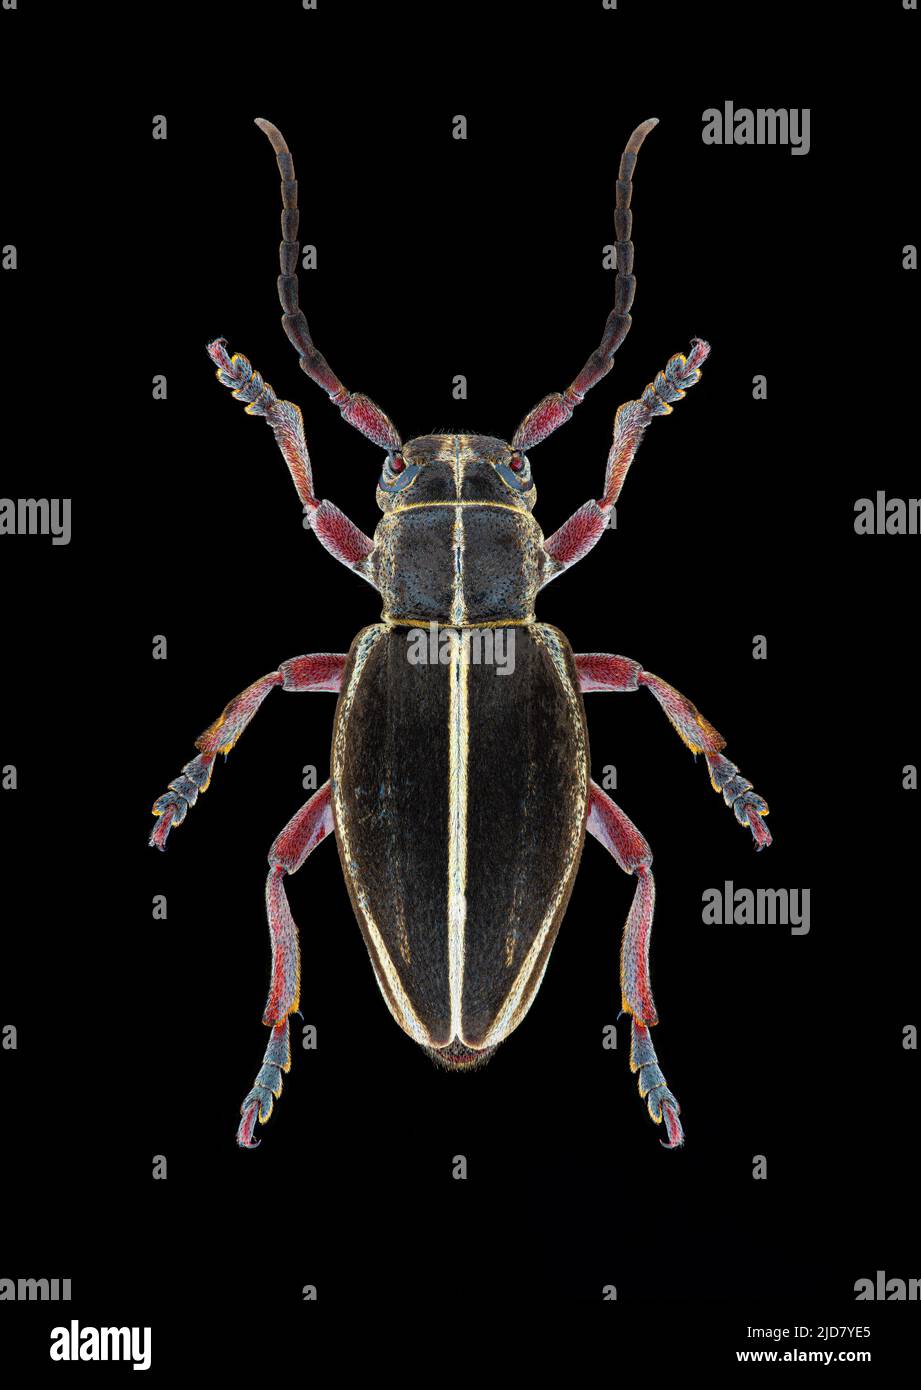 Longhorn Beetle (Docardion pedestre) Entomologieexemplar mit gespreizten Beinen und Antennen isoliert auf reinem schwarzen Hintergrund. Studiobeleuchtung. Makro Pho Stockfoto